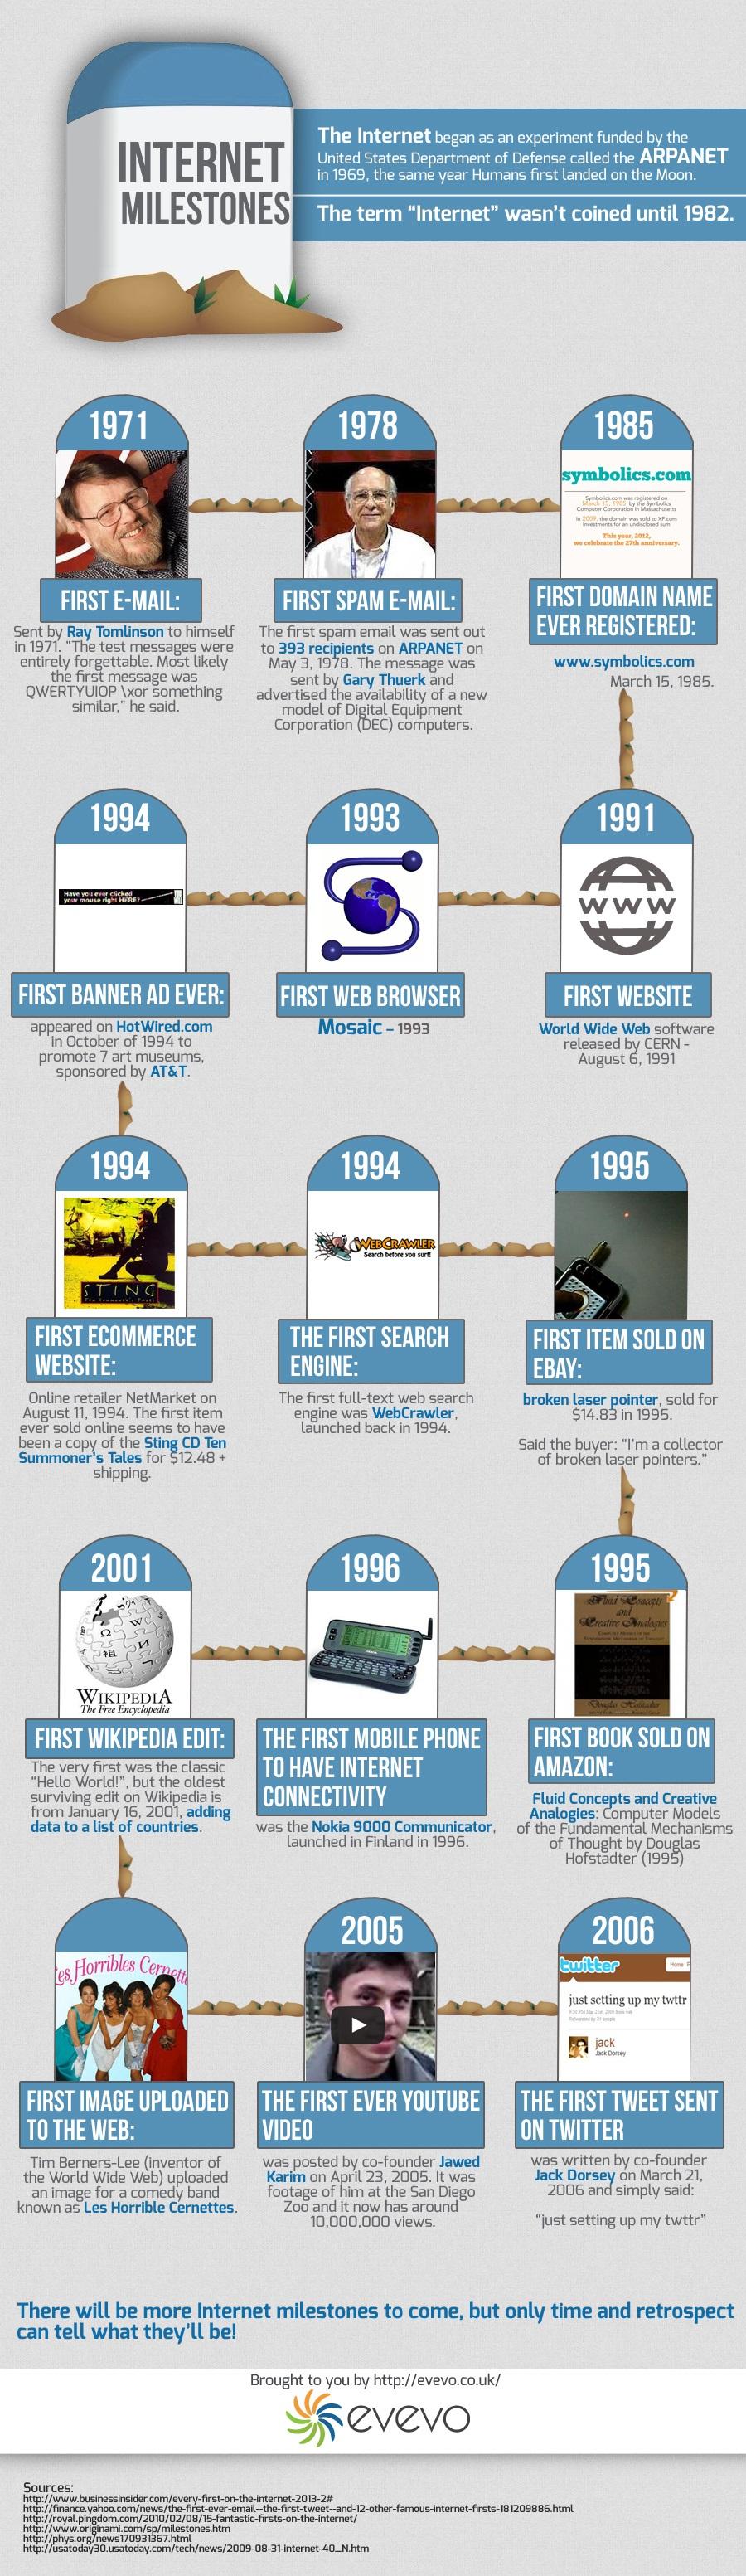 Hitos de Internet #Infografía #Internet #Evolución #Historia